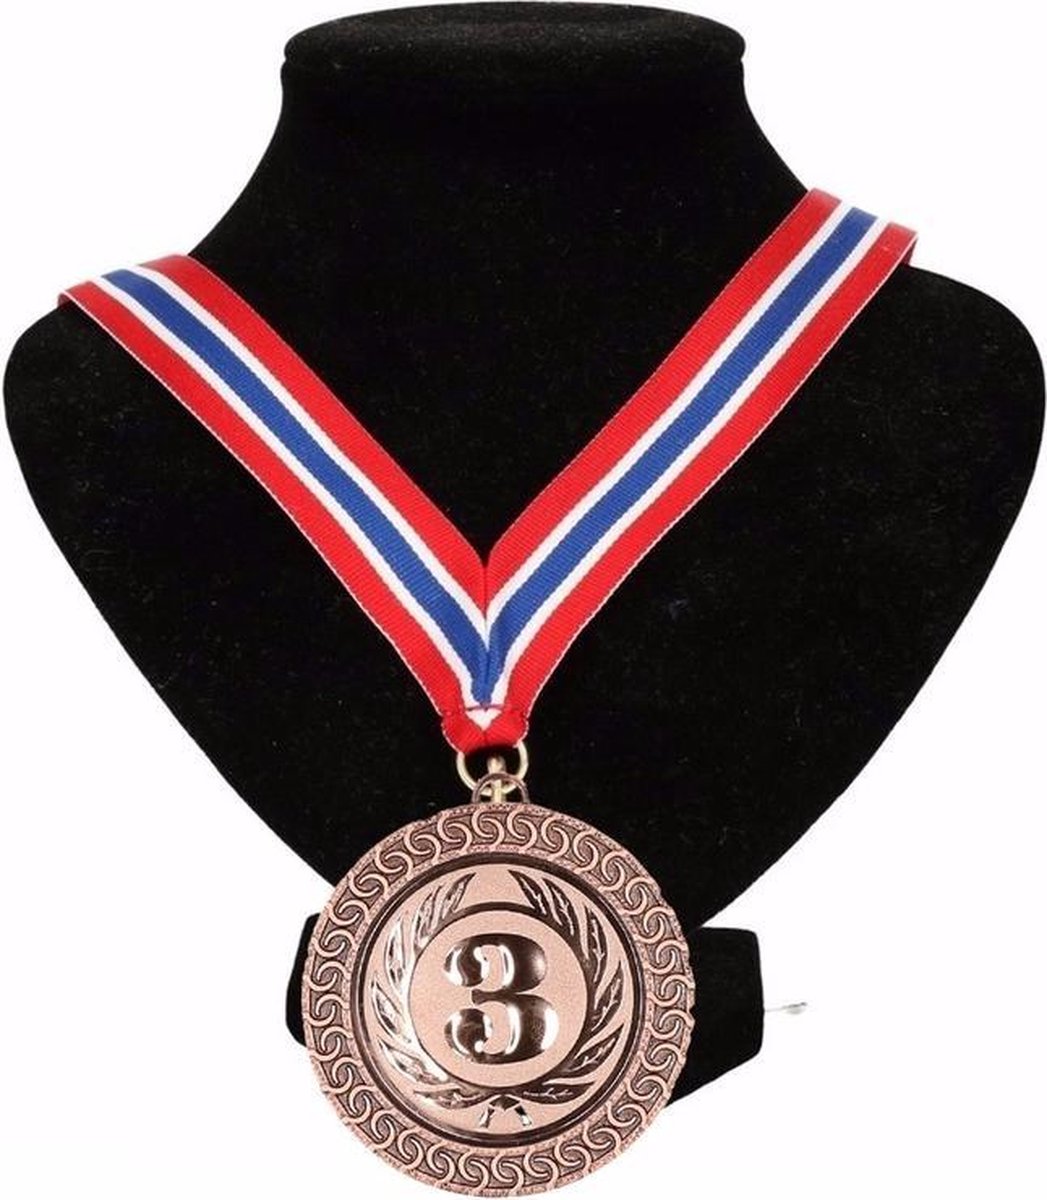 Médailles d'or de bronze avec ruban de cou, médaille de champion